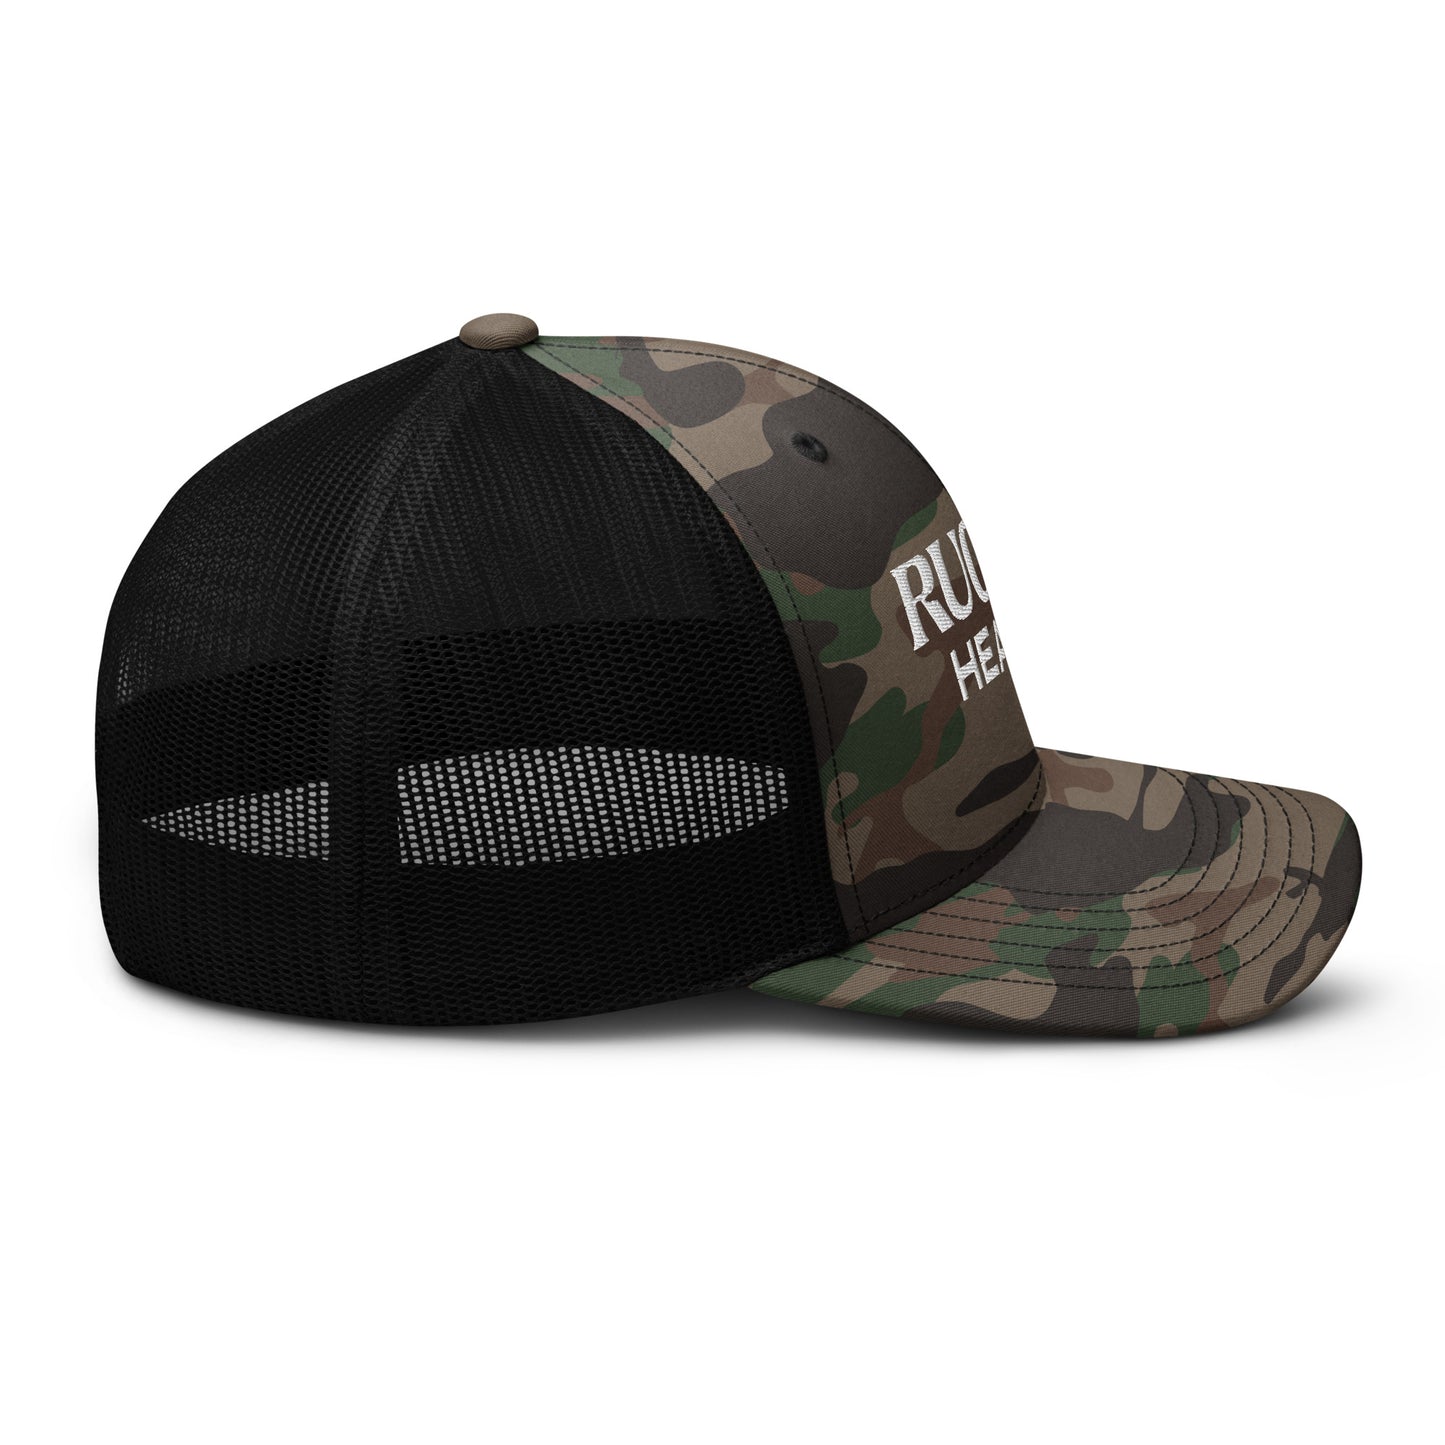 Camouflage trucker hat - Rugiet Health